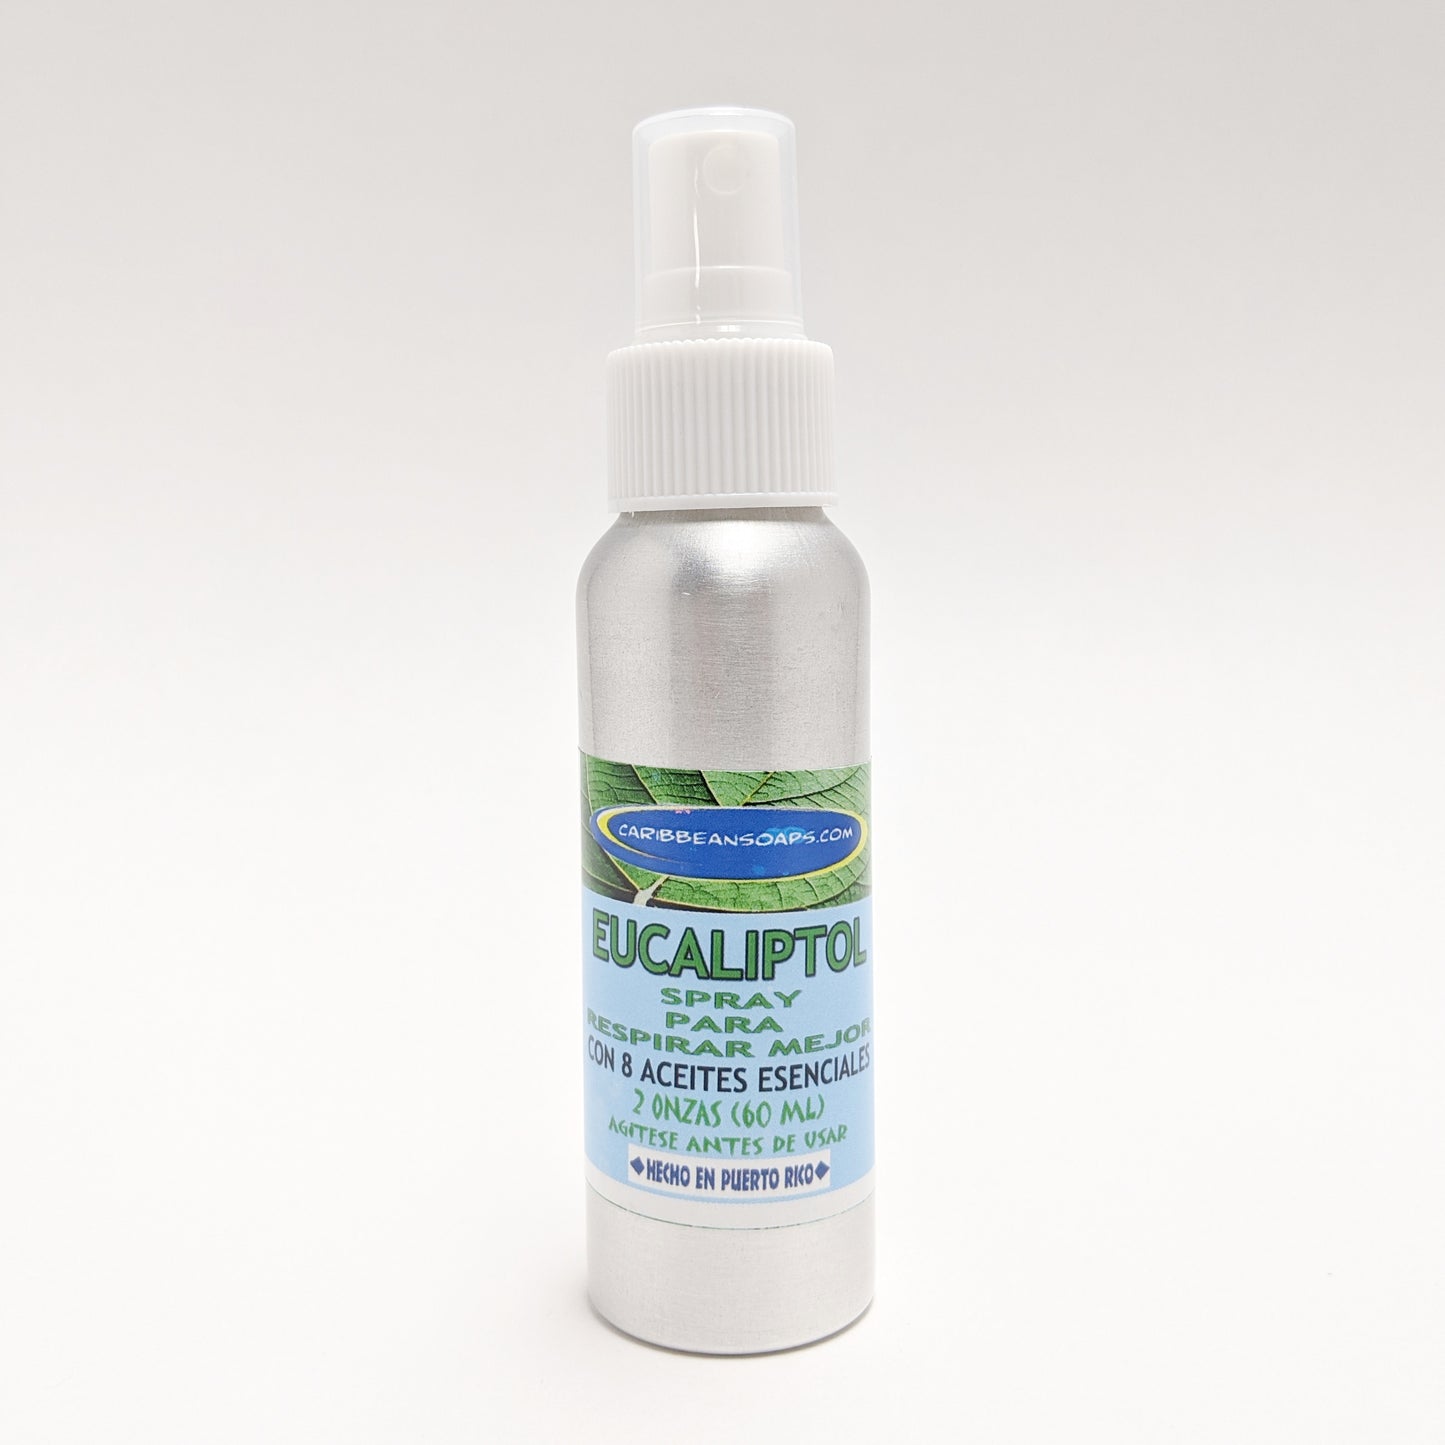 Eucaliptol - Spray descongestionante - Ayuda a Respirar